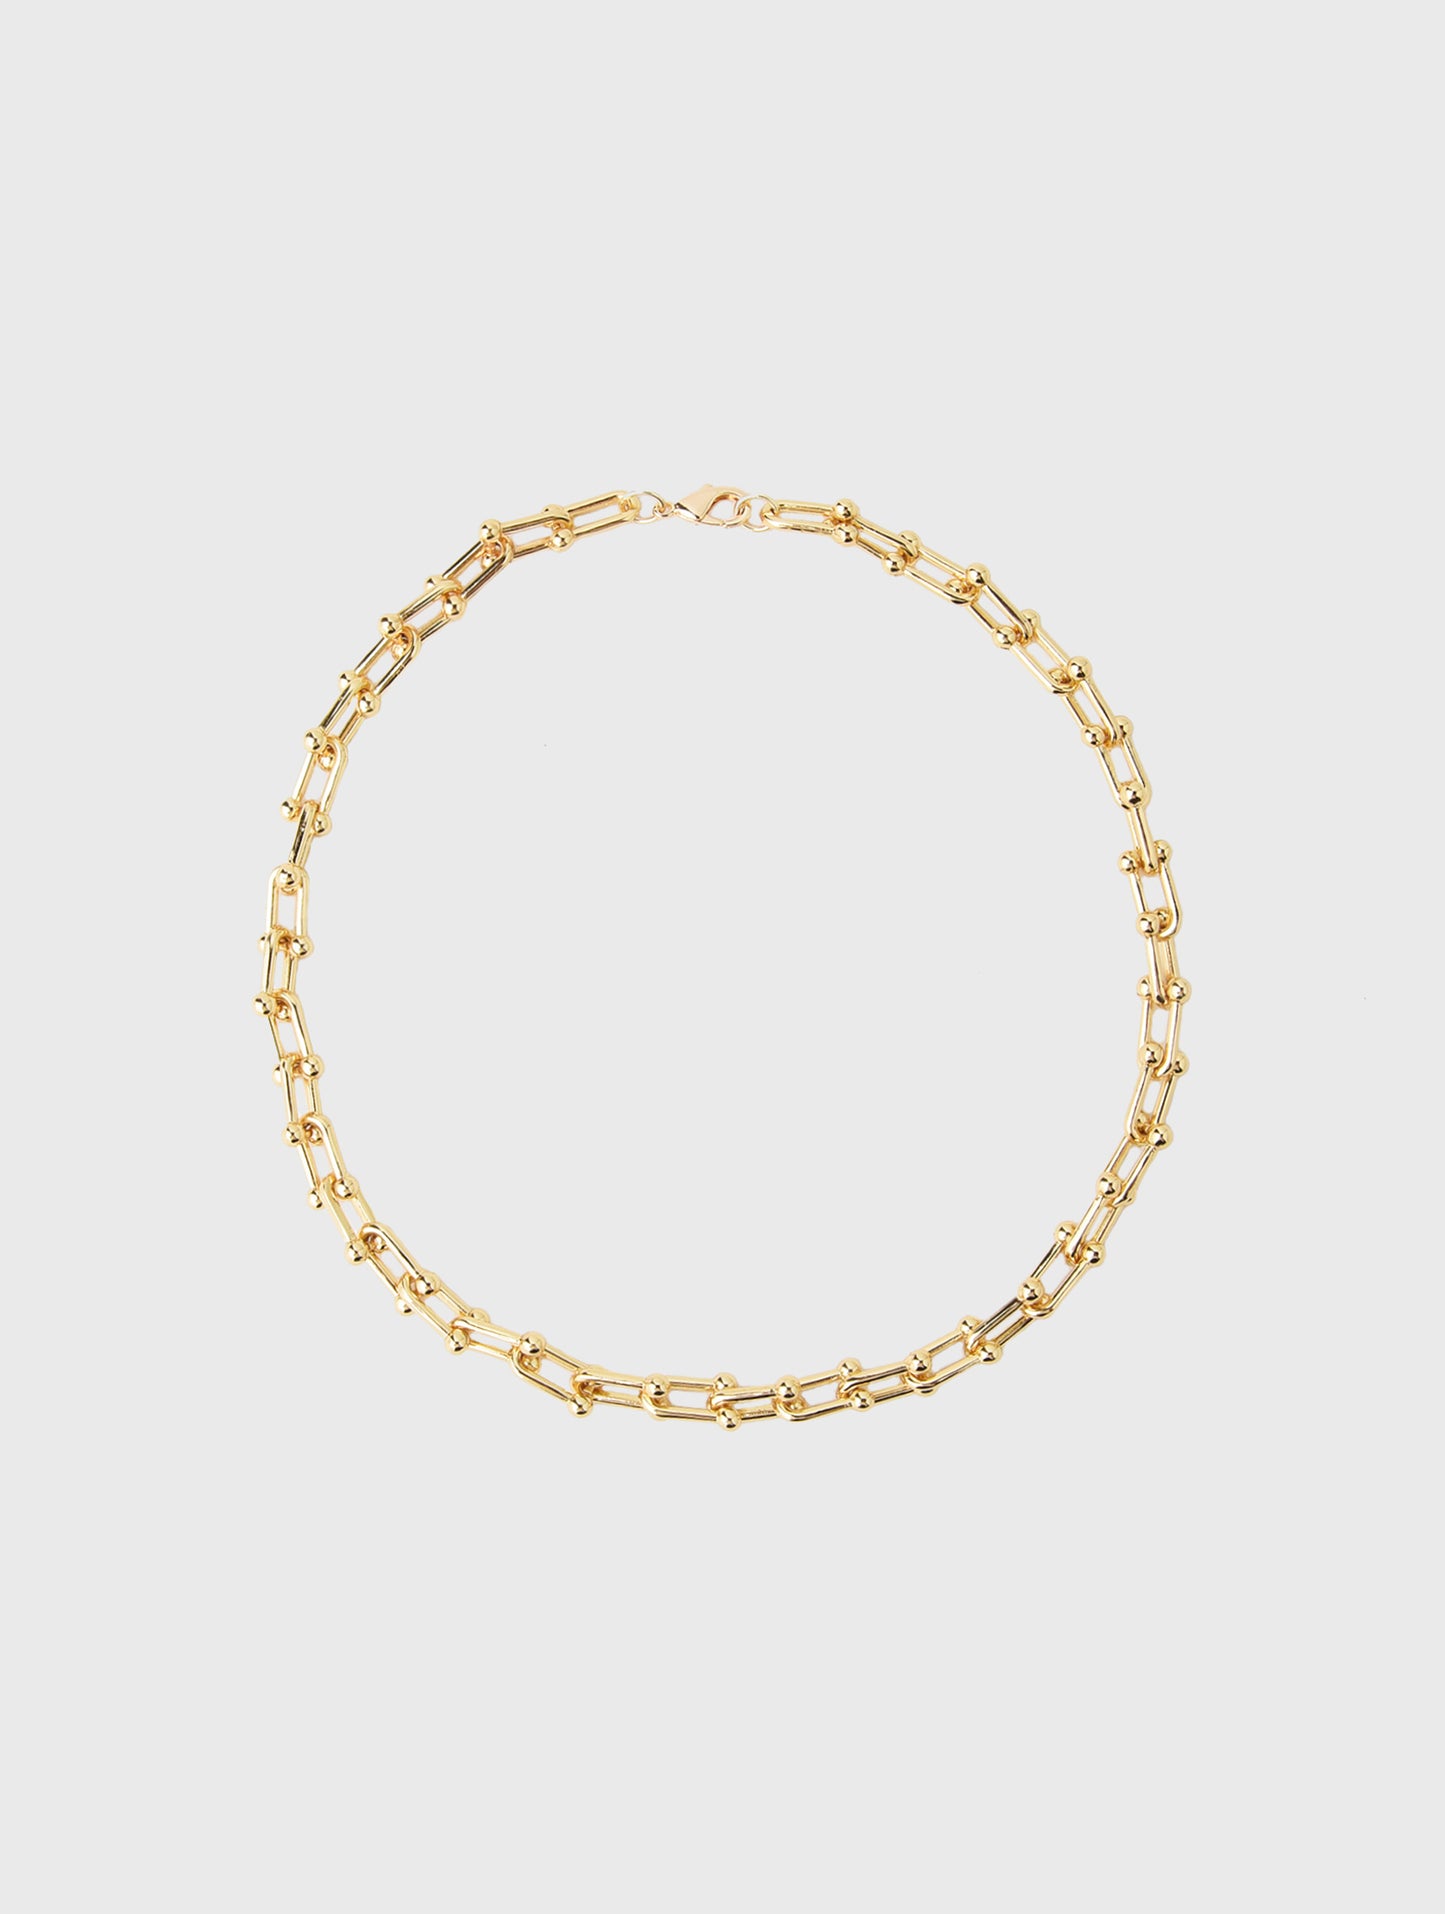 Annie O'Grady Designs Tiffany Chain Necklace